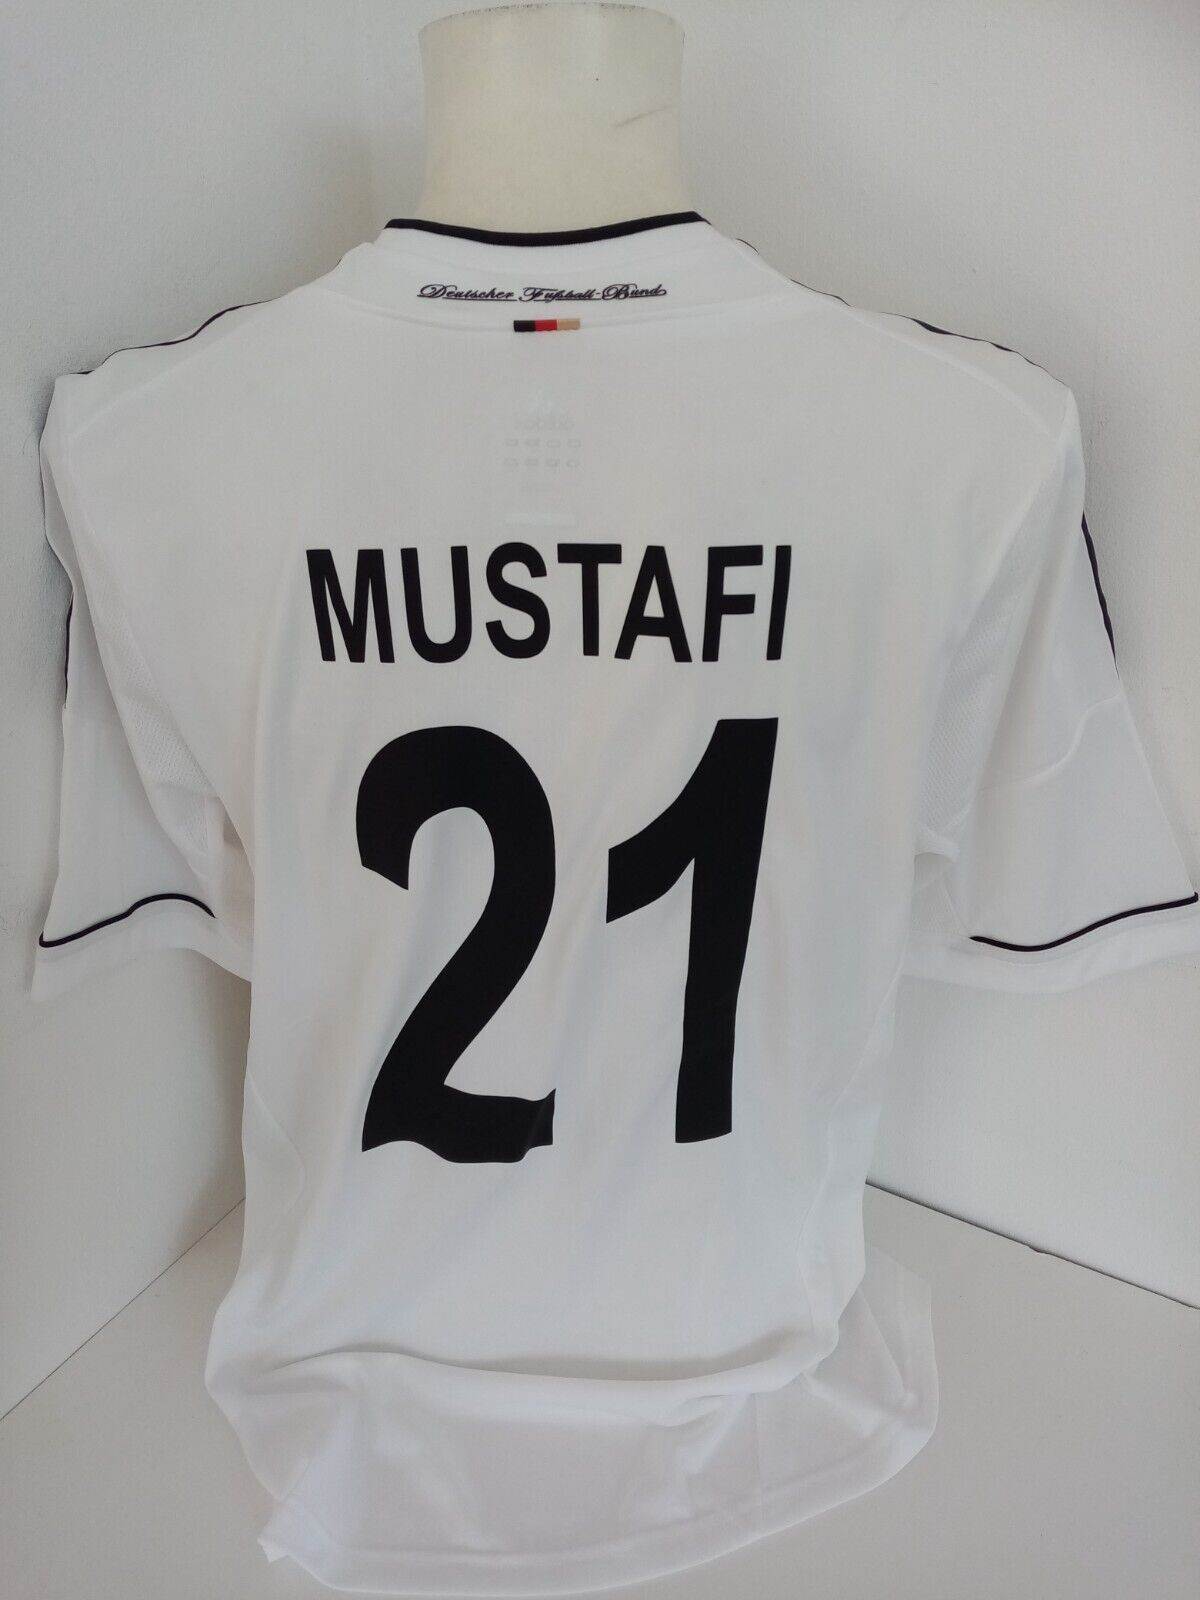 Deutschland Trikot Mustafi signiert Authentic DFB Fußball Adidas Autogramm XL